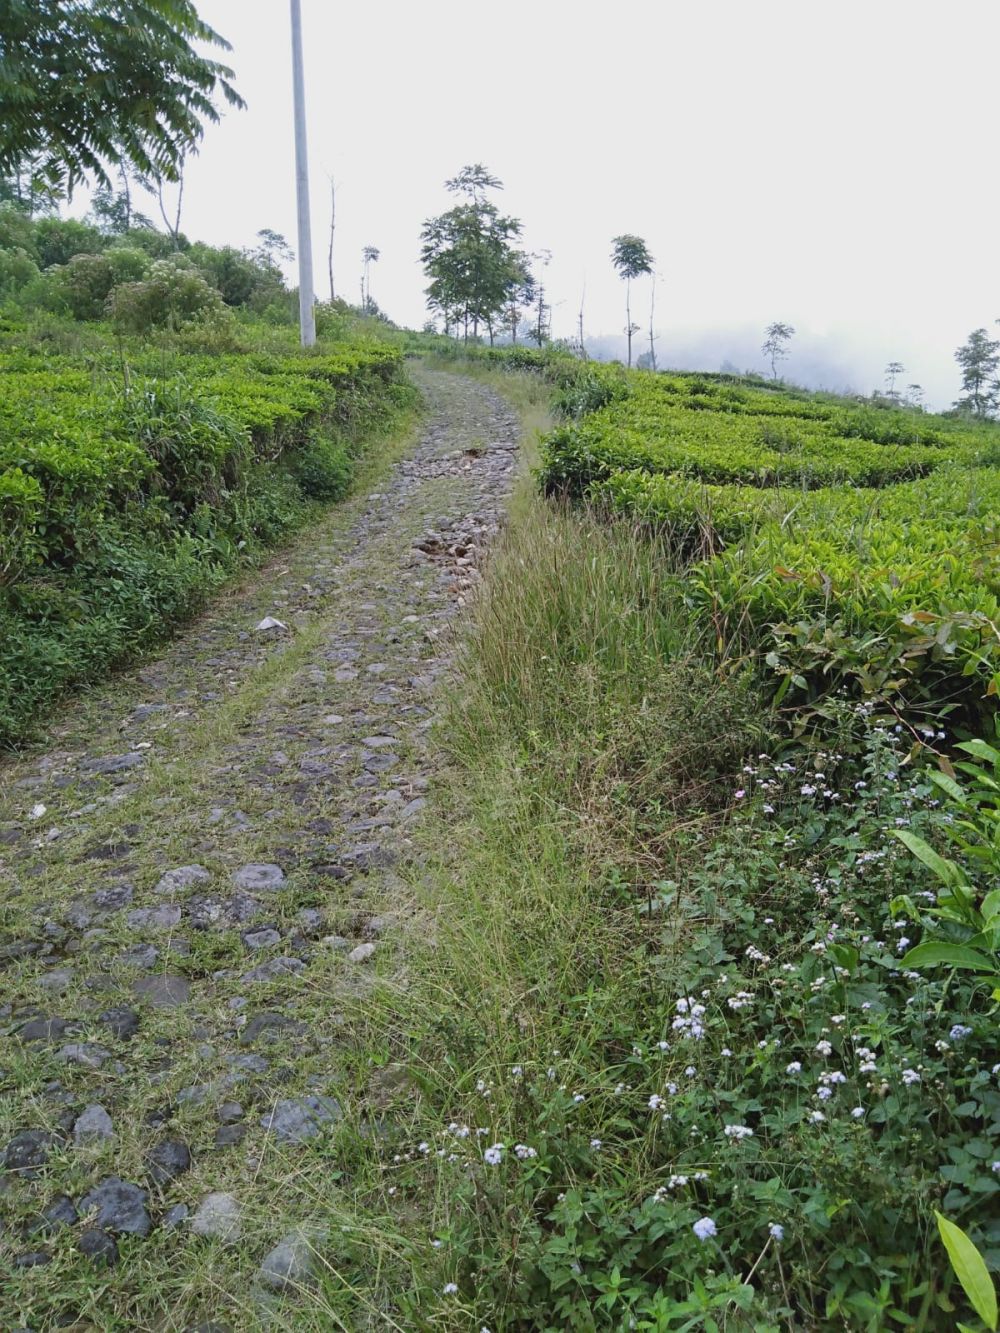 5 Keindahan Dusun Promasan di Lereng Gunung Ungaran, Spot Healing!